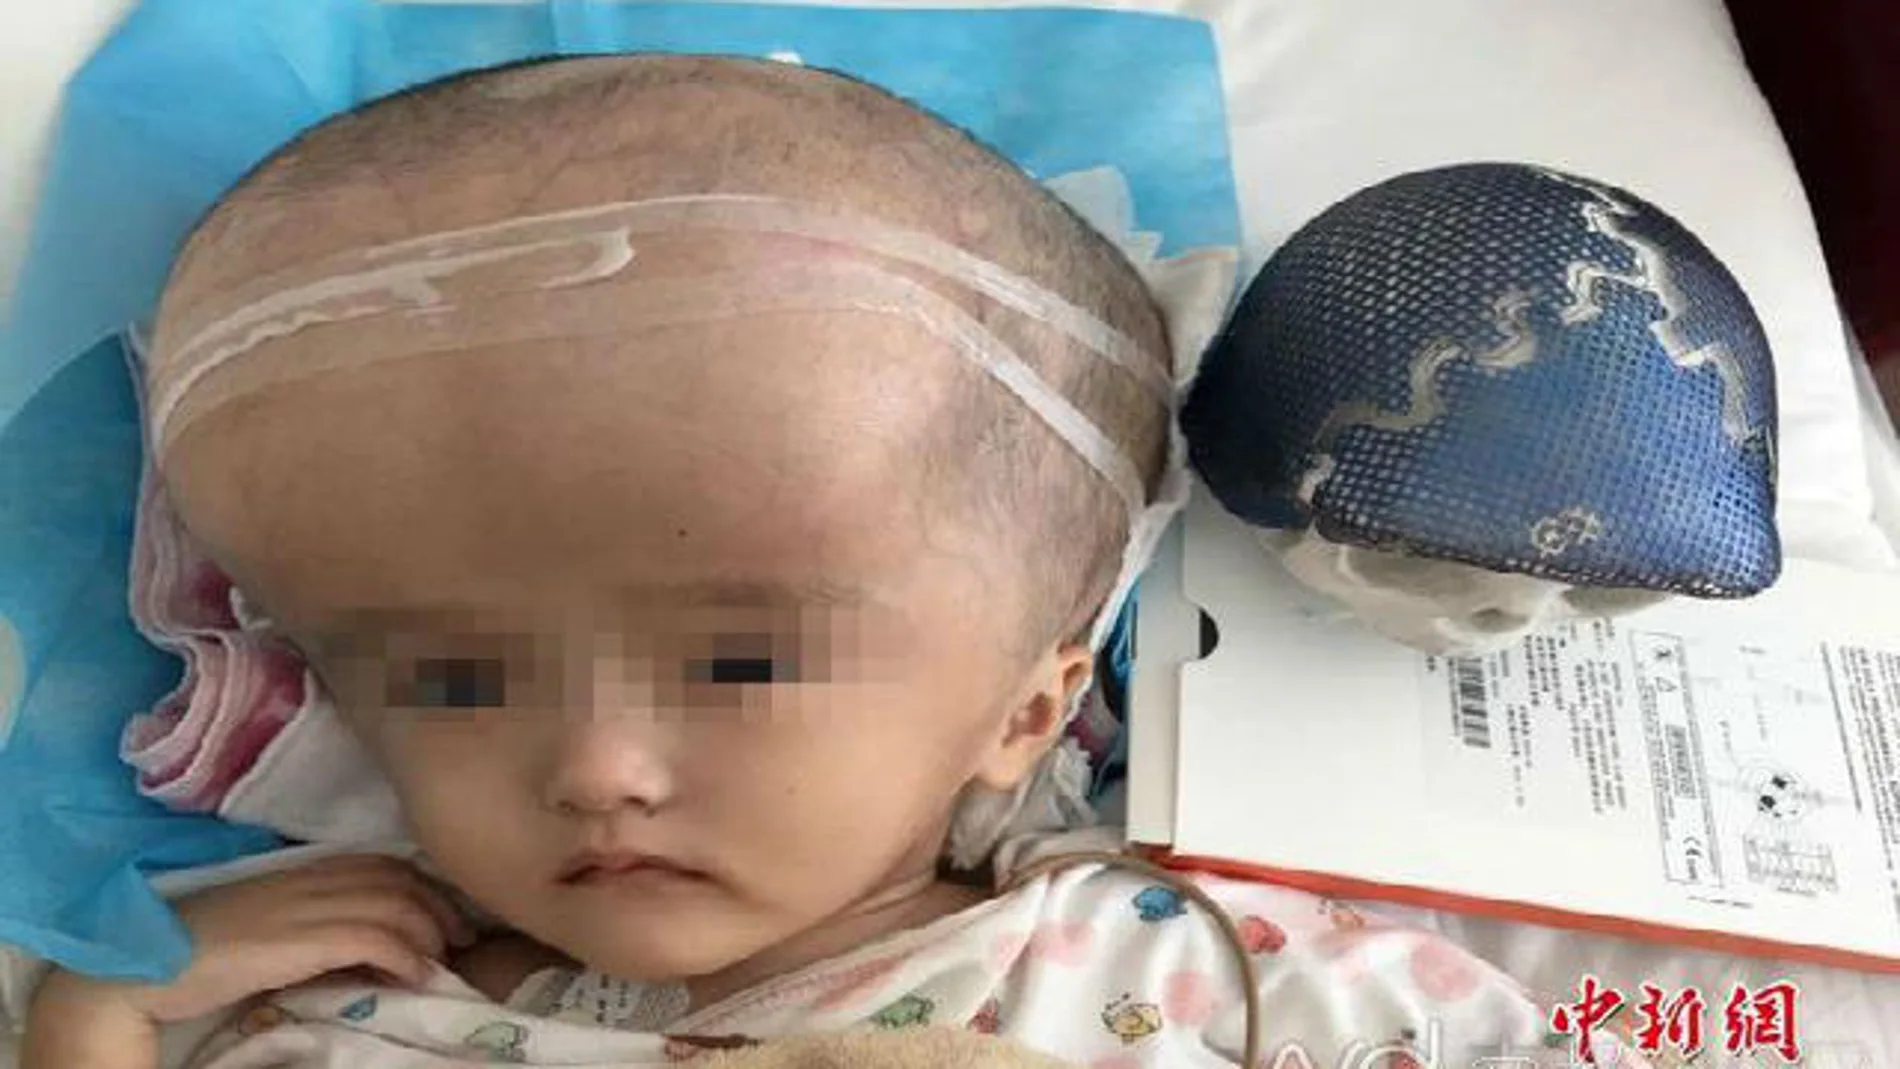 El cráneo de la niña había crecido cuatro veces más de lo normal y los médicos tuvieron que drenar 15 litros de líquido